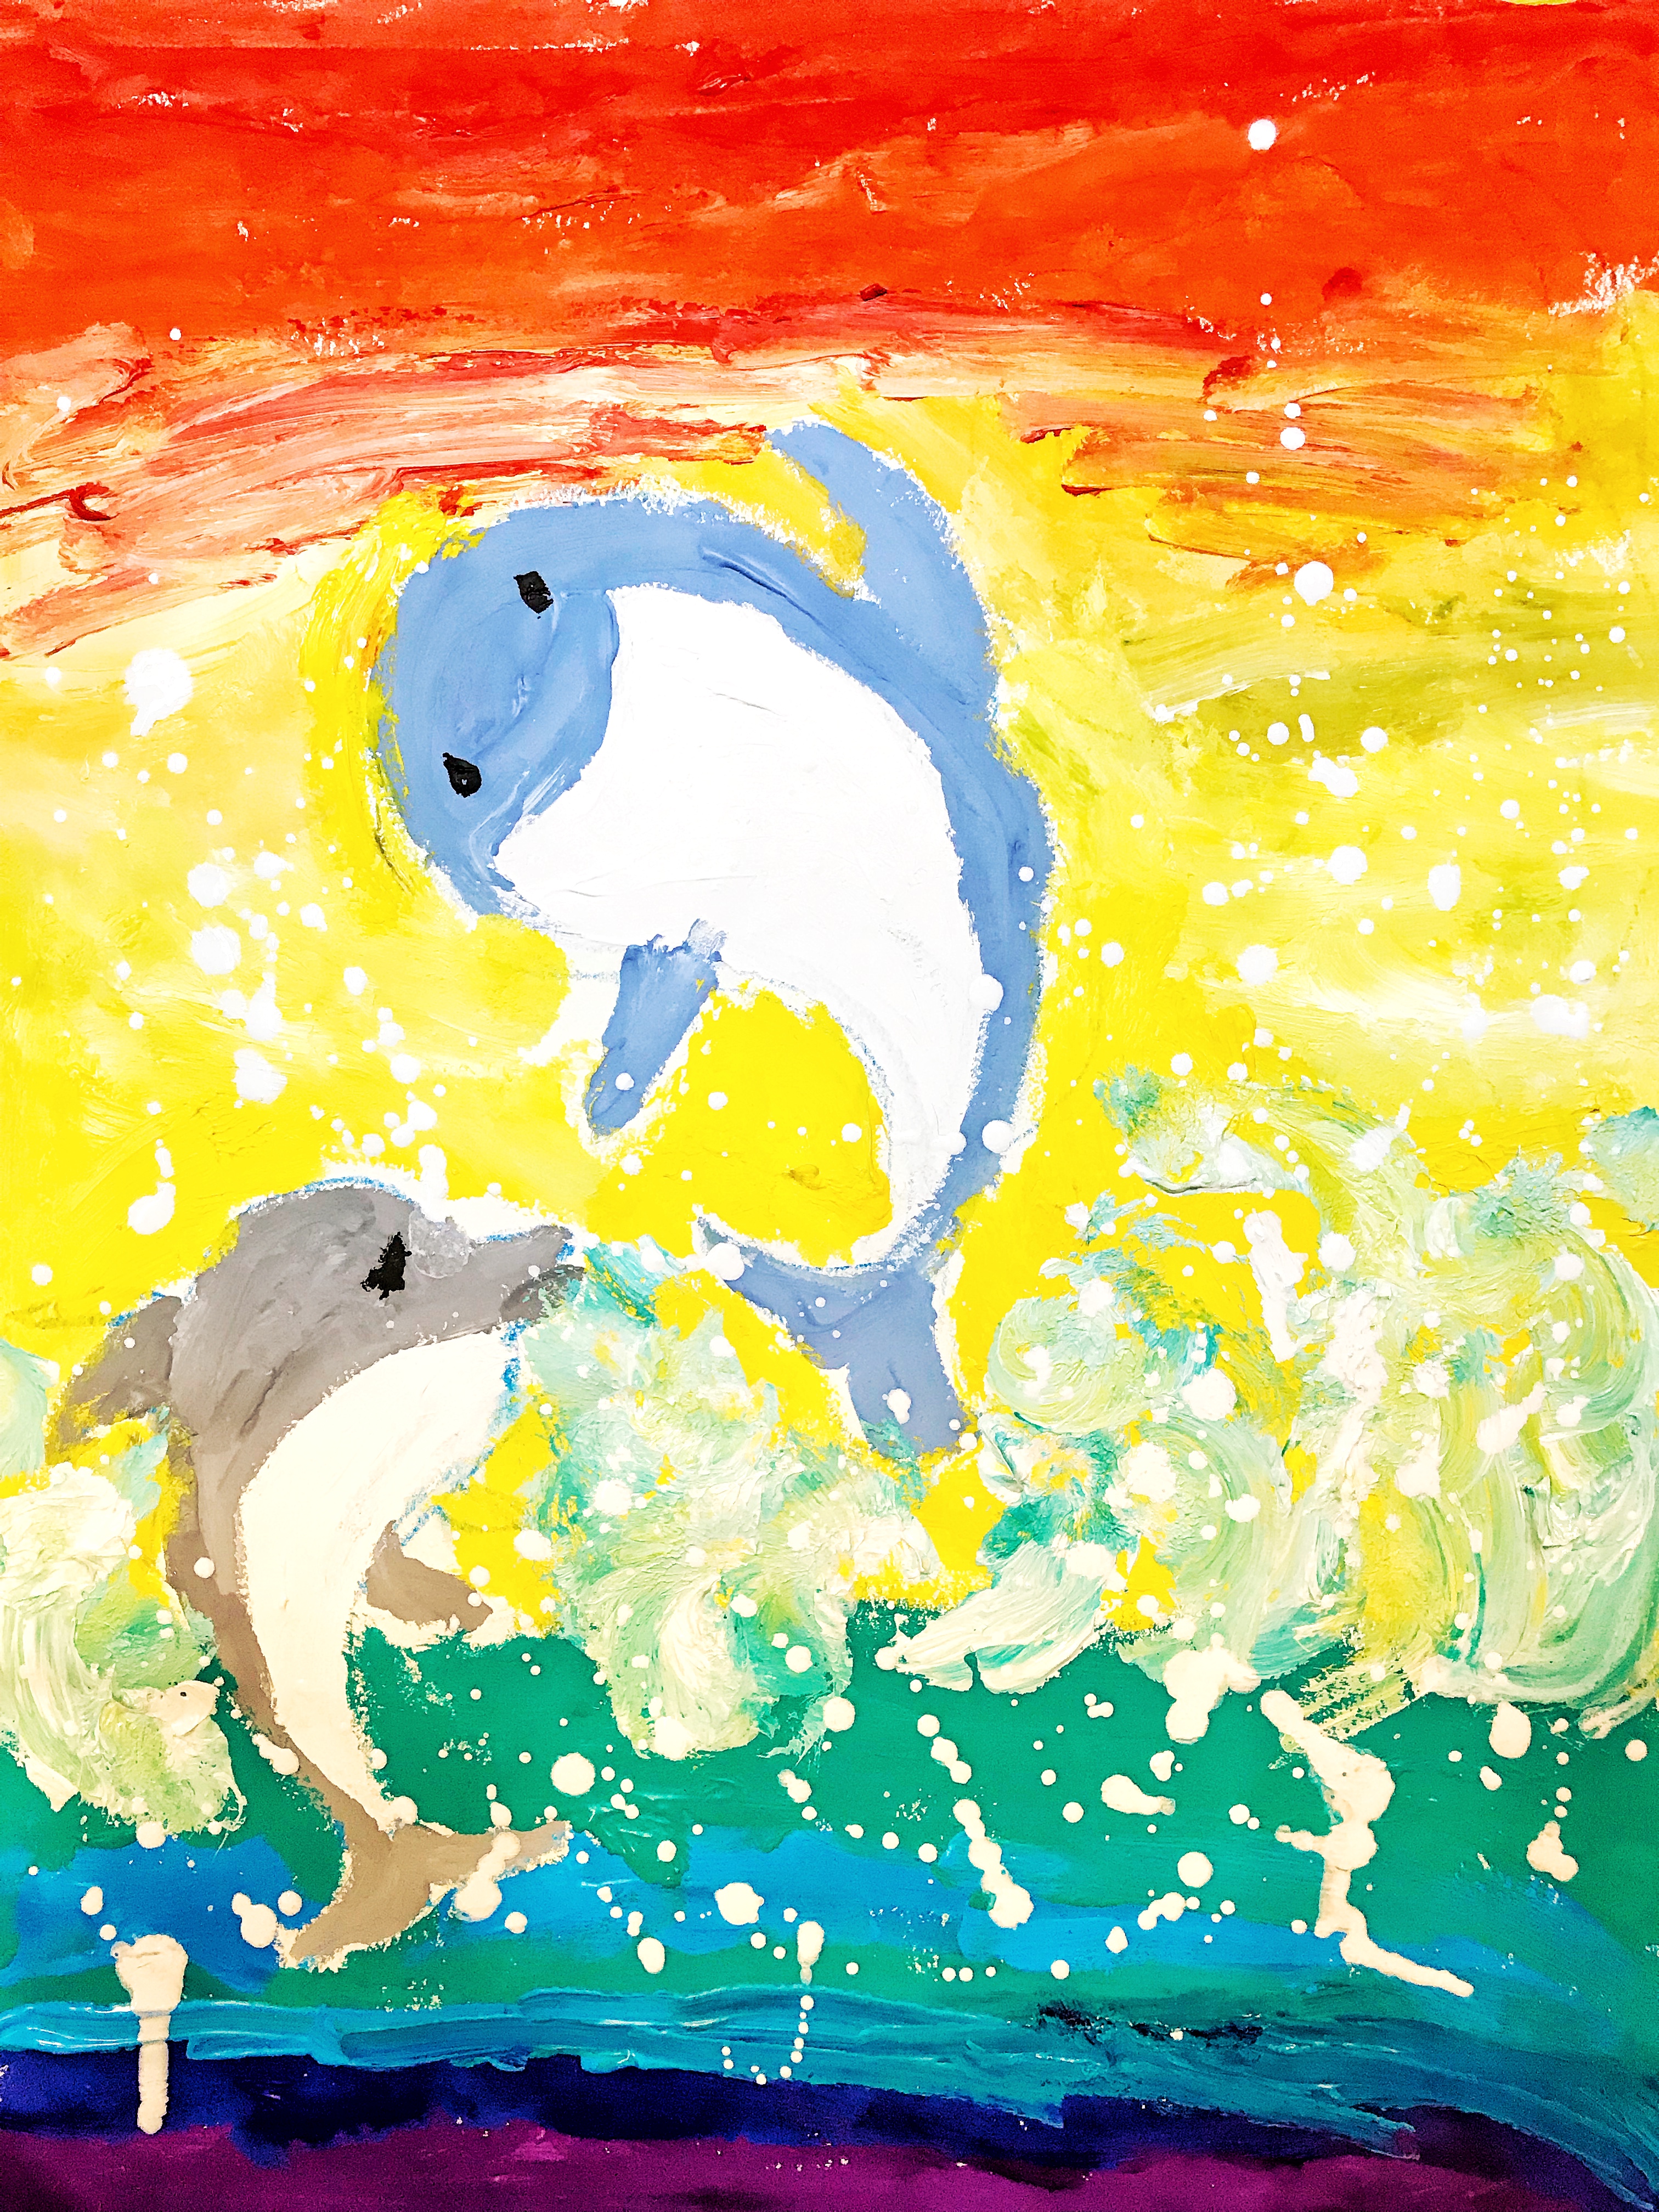 编号:25208 作品题目:海豚 作品形式(如:油画,国画等:水粉 作者姓名